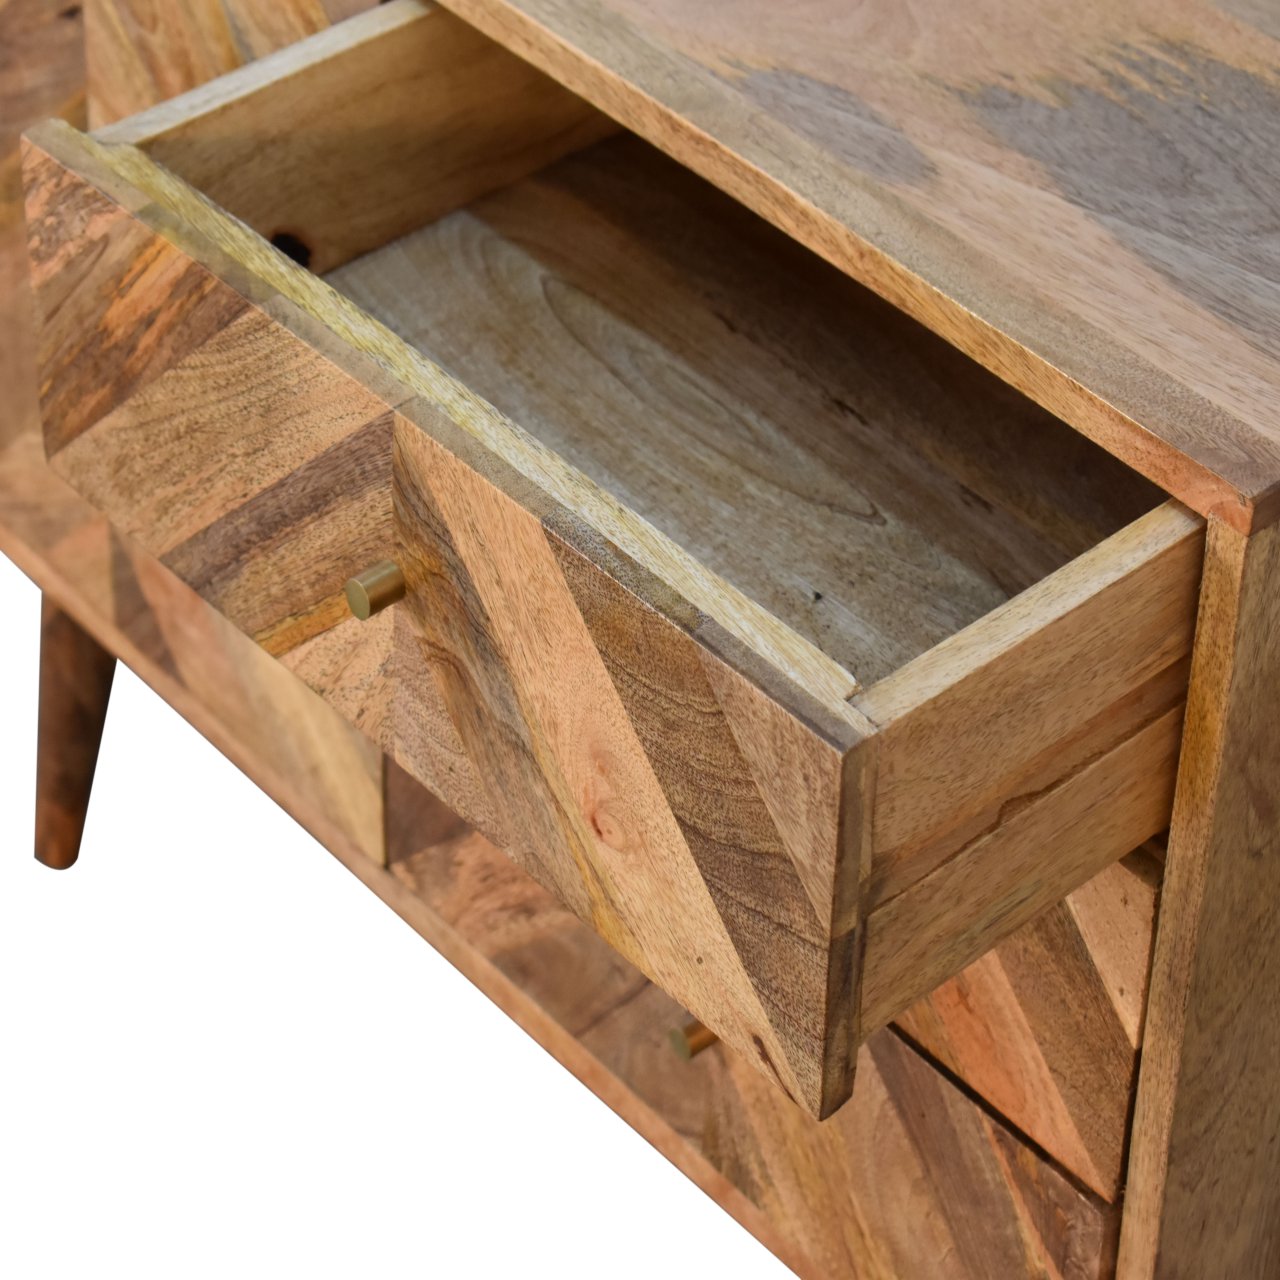 Muna Solid Wood Sideboard